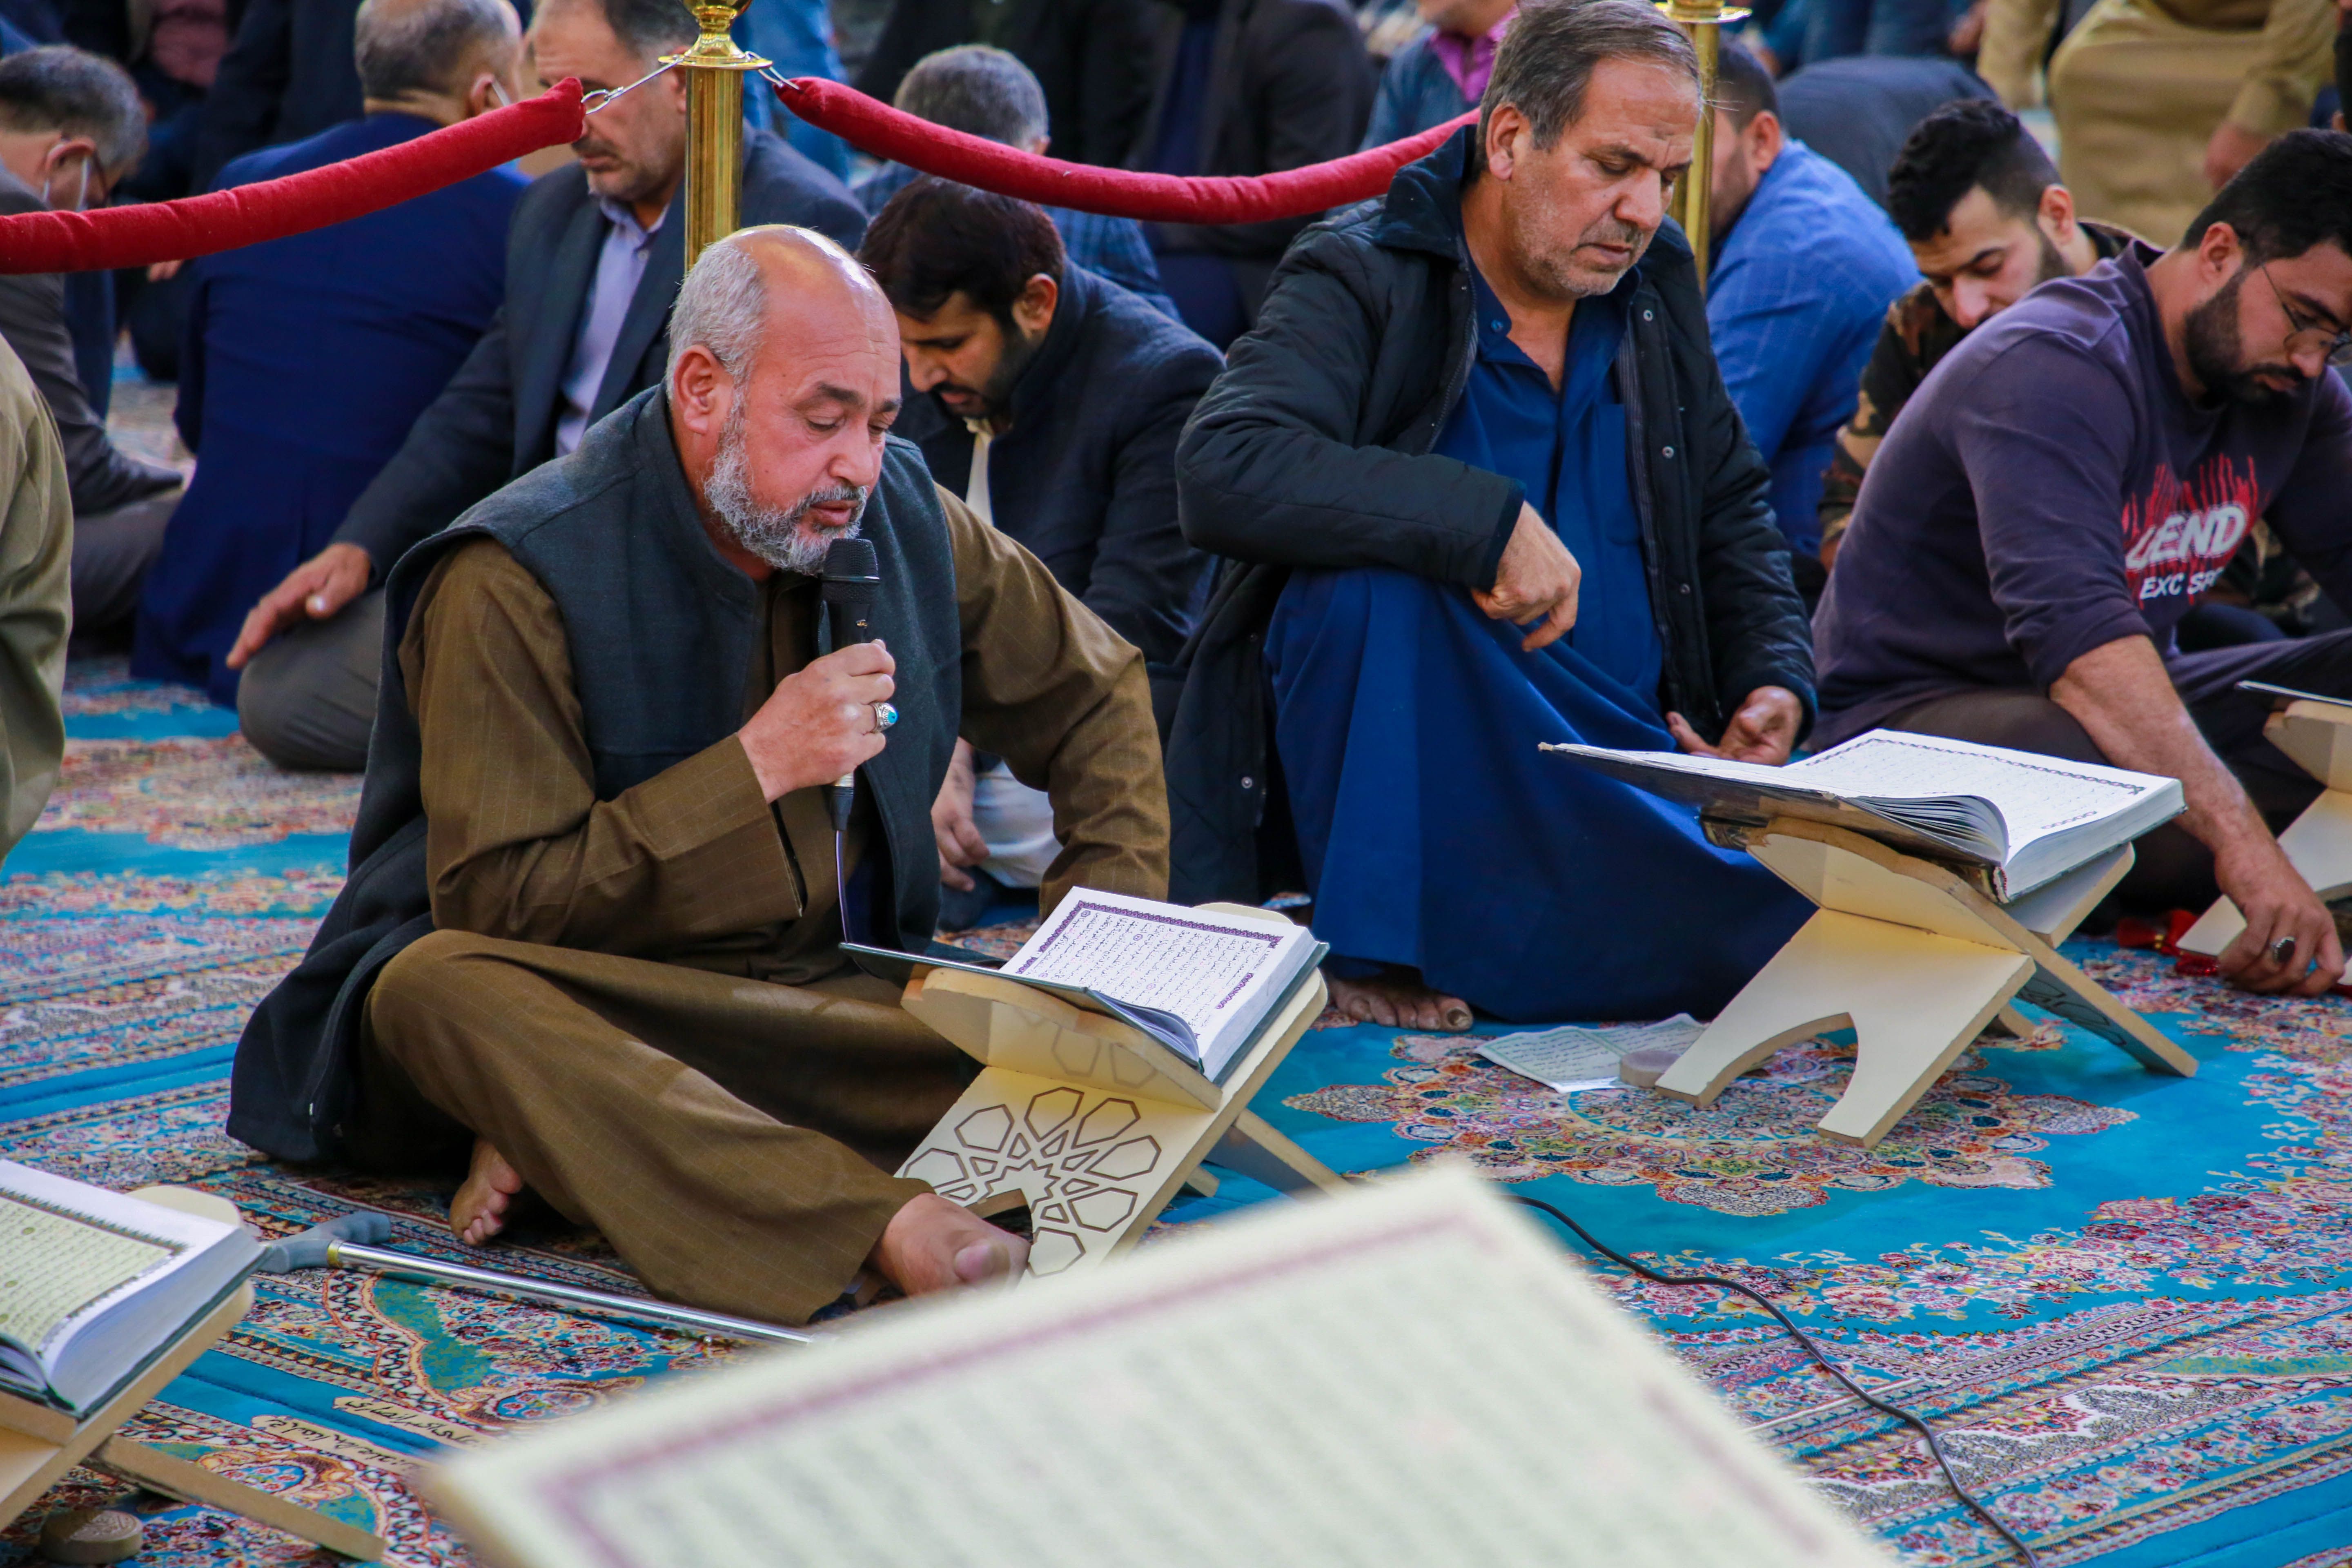 معهد القرآن الكريم والسادة الخدم يقيمان محفلًا تعليميًا في الصحن العباسيّ المطهّر